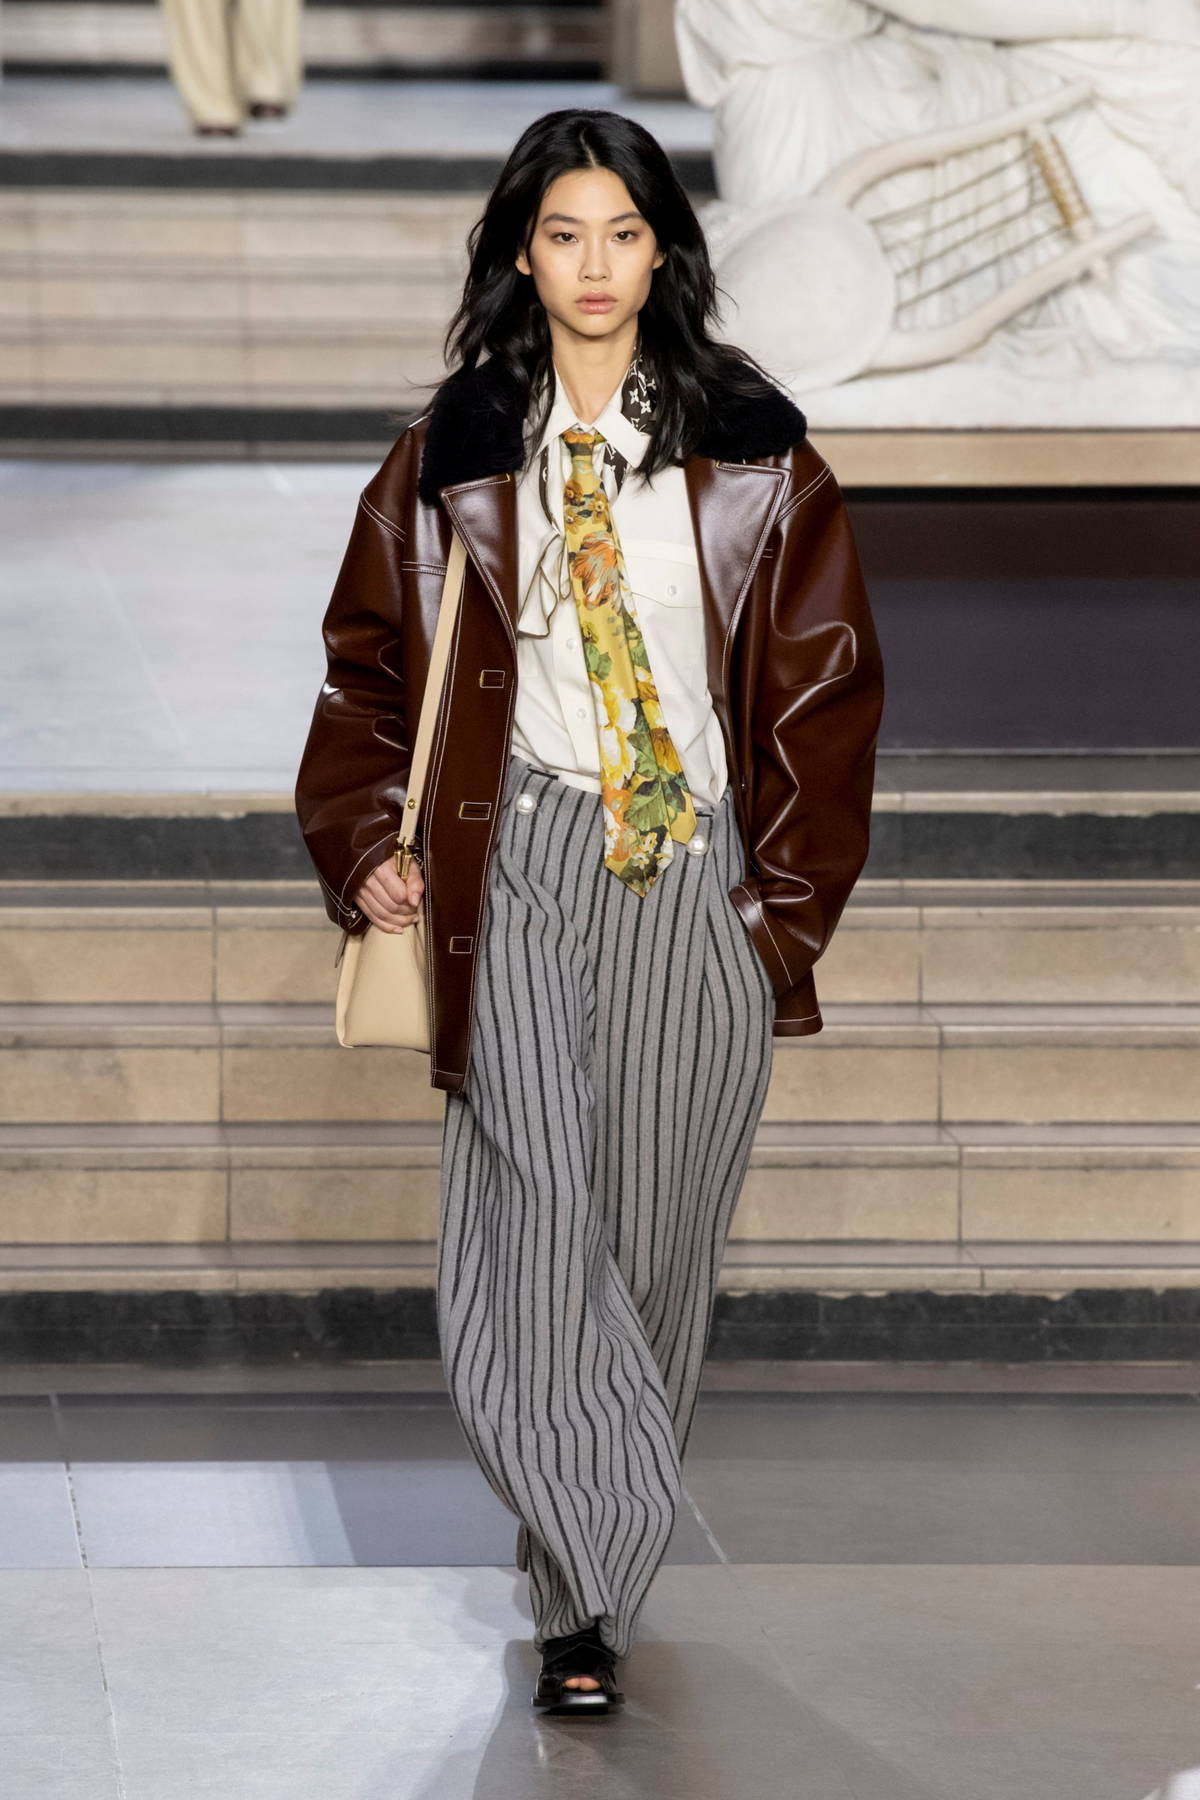 HoYeon Jung walks the runway for Louis Vuitton Womenswear Fall